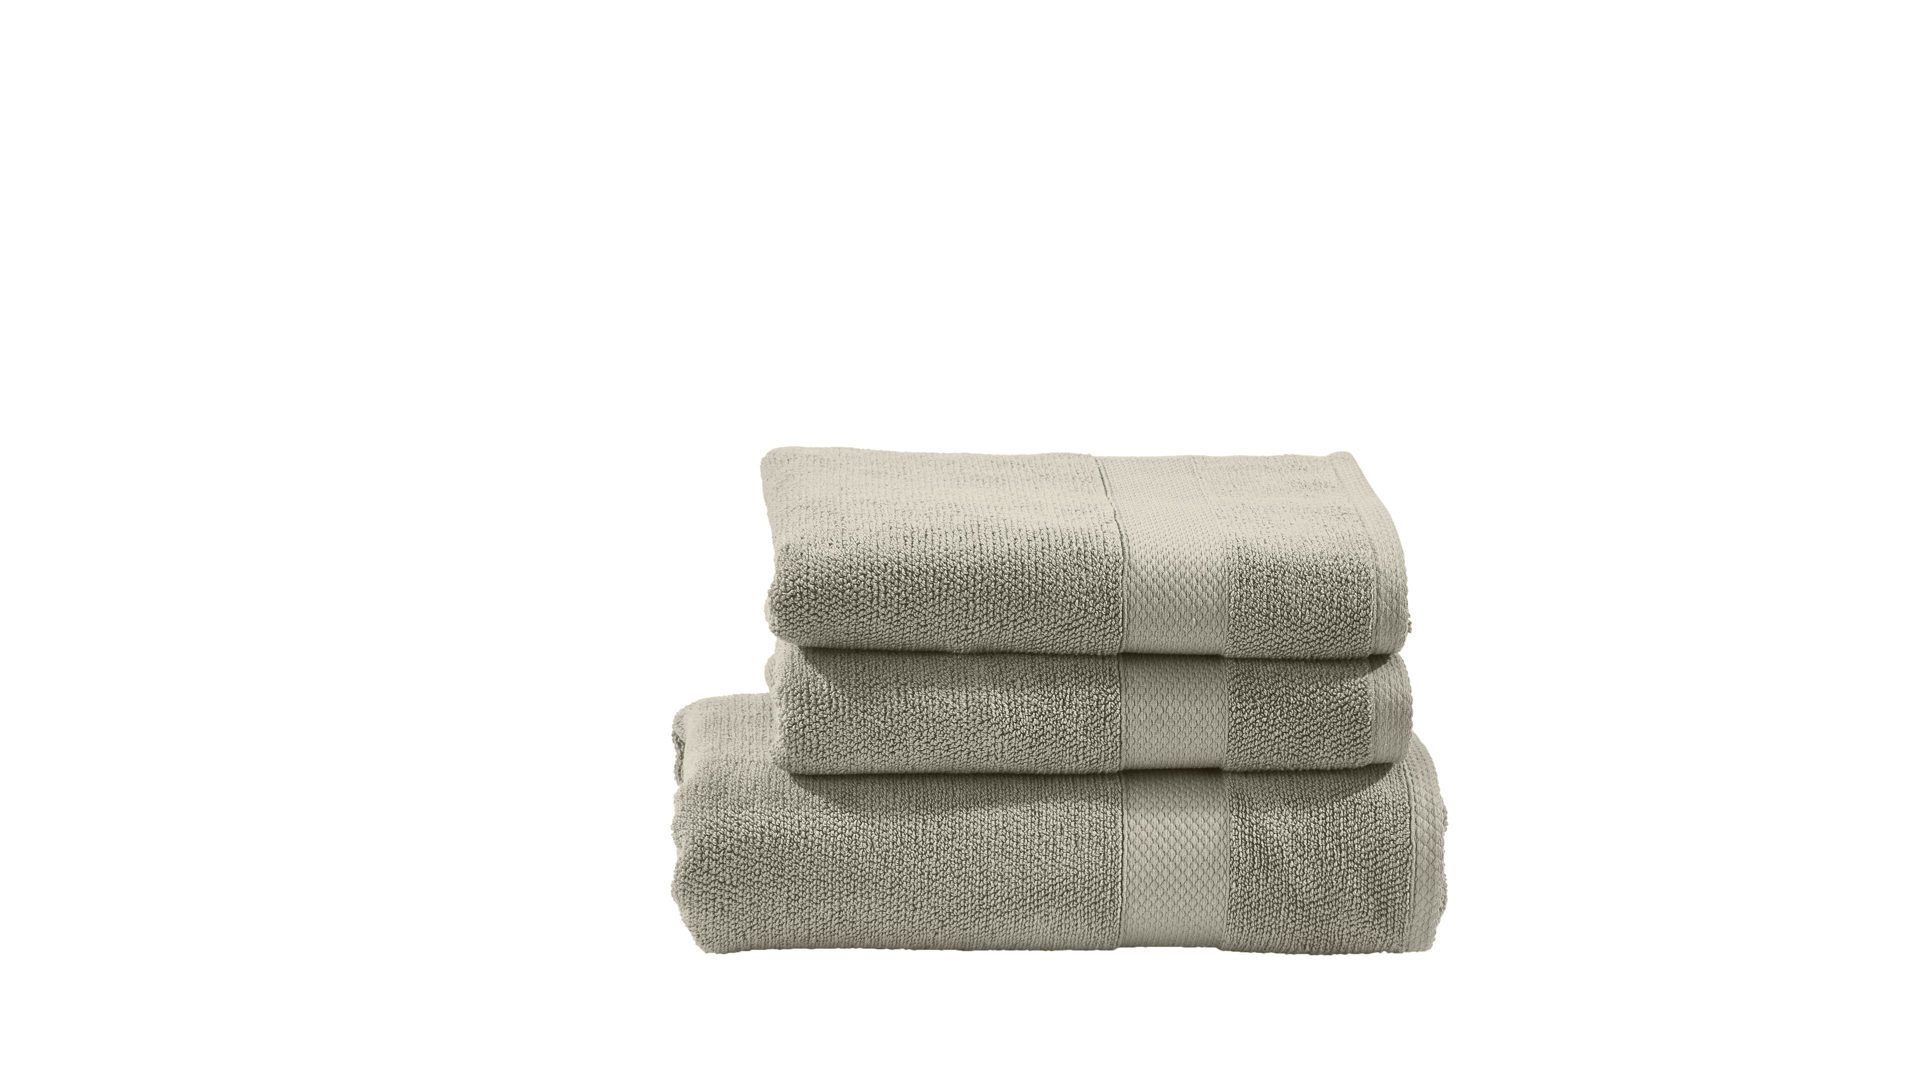 Handtuch-Set Done.® aus Stoff in Beige done.® Handtuch-Set Deluxe für Ihre Heimtextilien taupefarbene Baumwolle  – dreiteilig